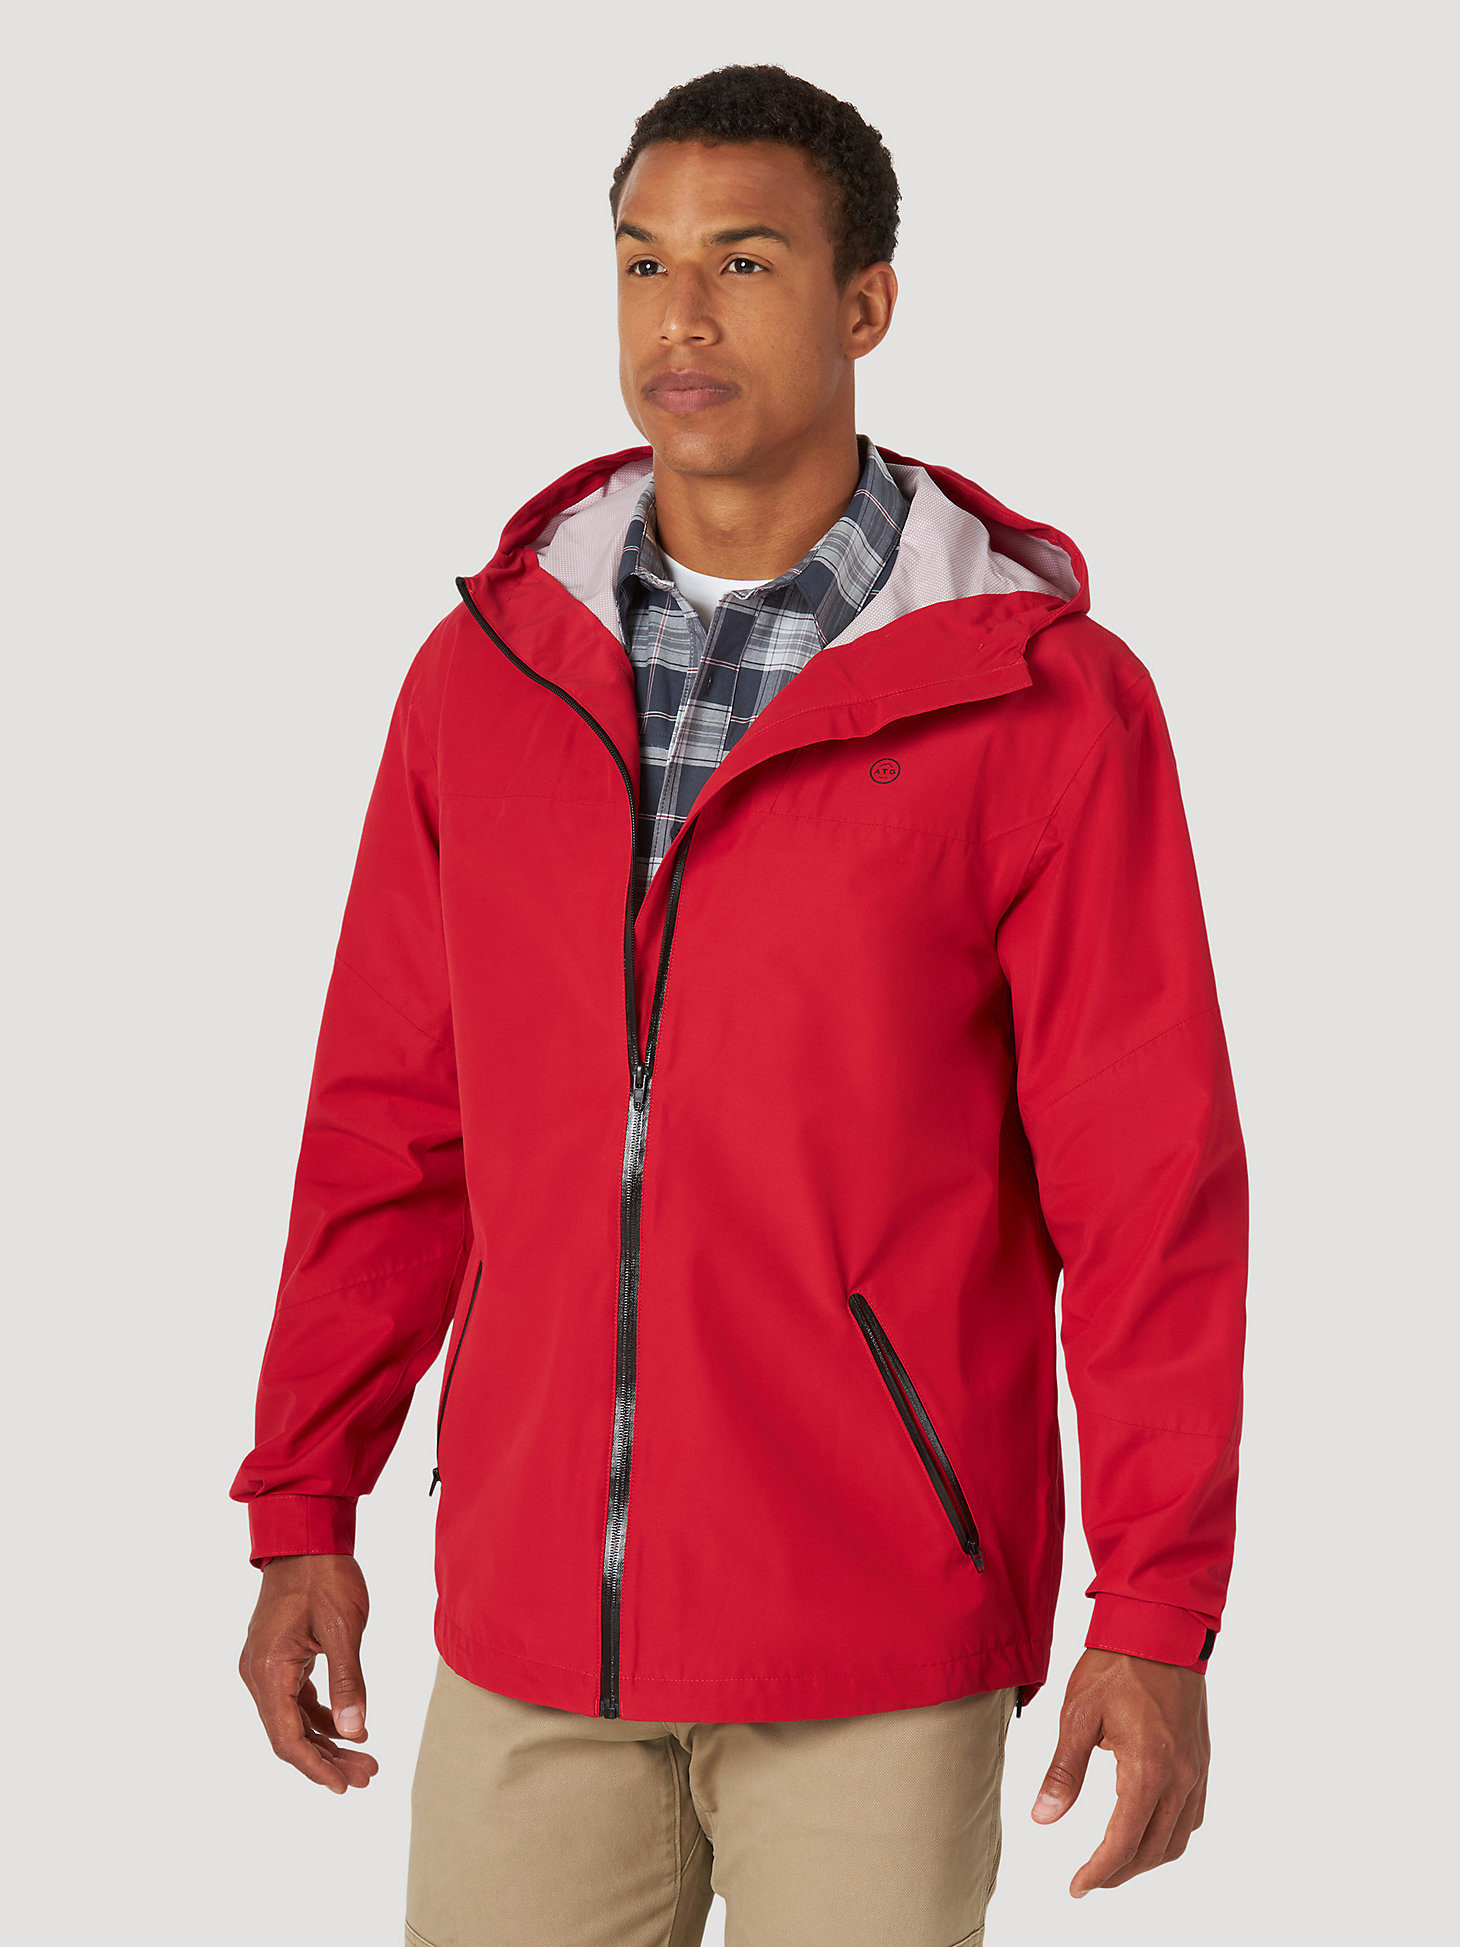 All terrain gear By Wrangler® Men's Rain Jacket in Red alternative view 1